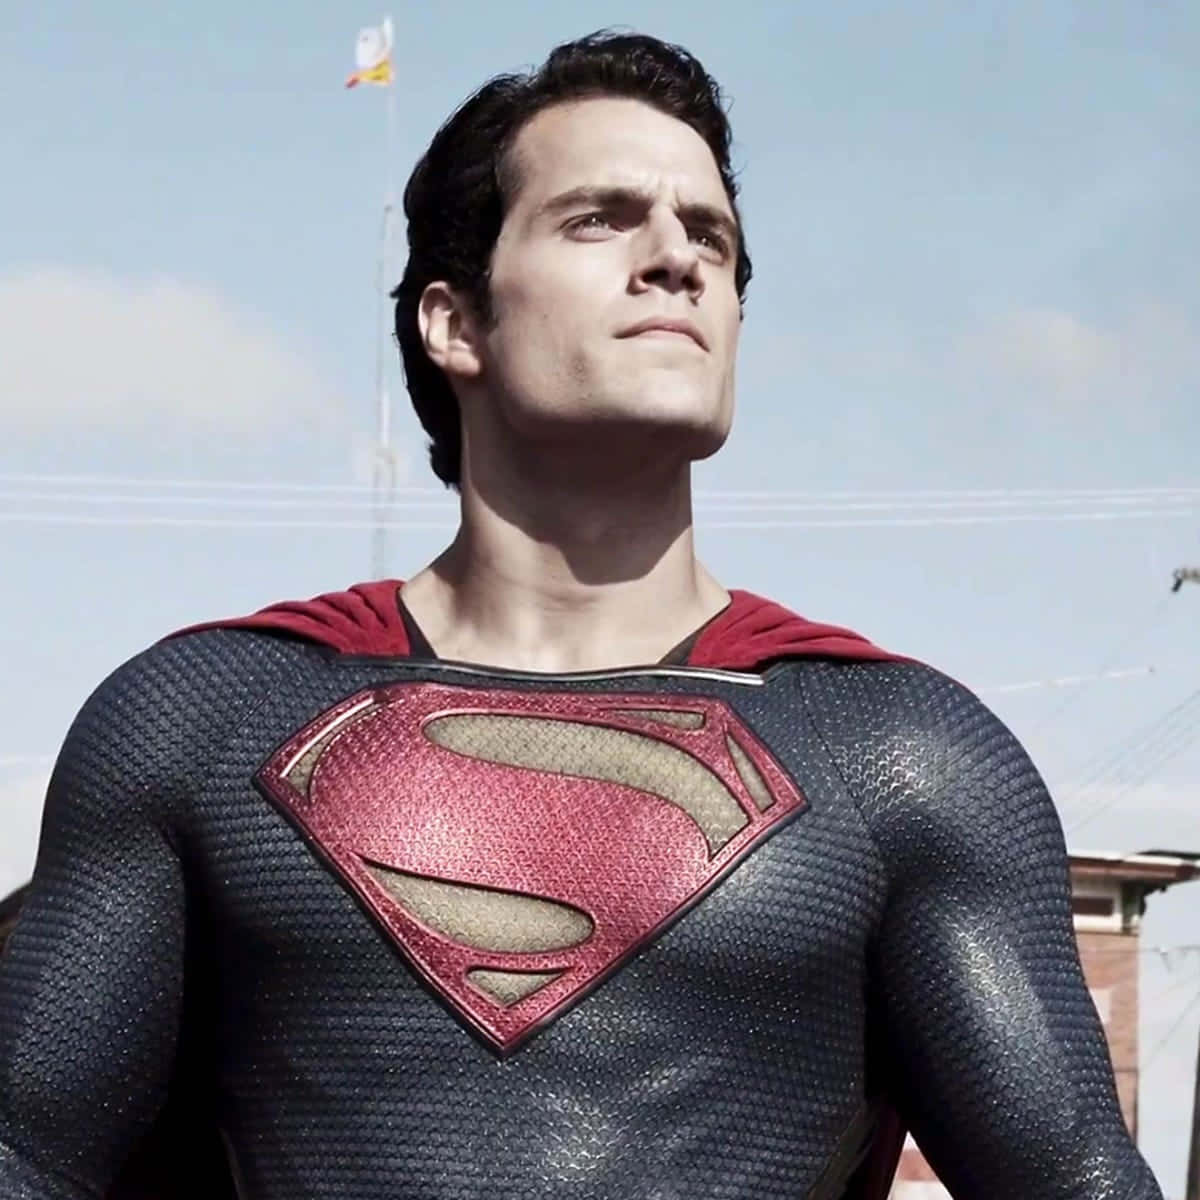 Supermanär En Ikonisk Superhjälte, Redo Att Försvara Mänskligheten Från Det Onda.